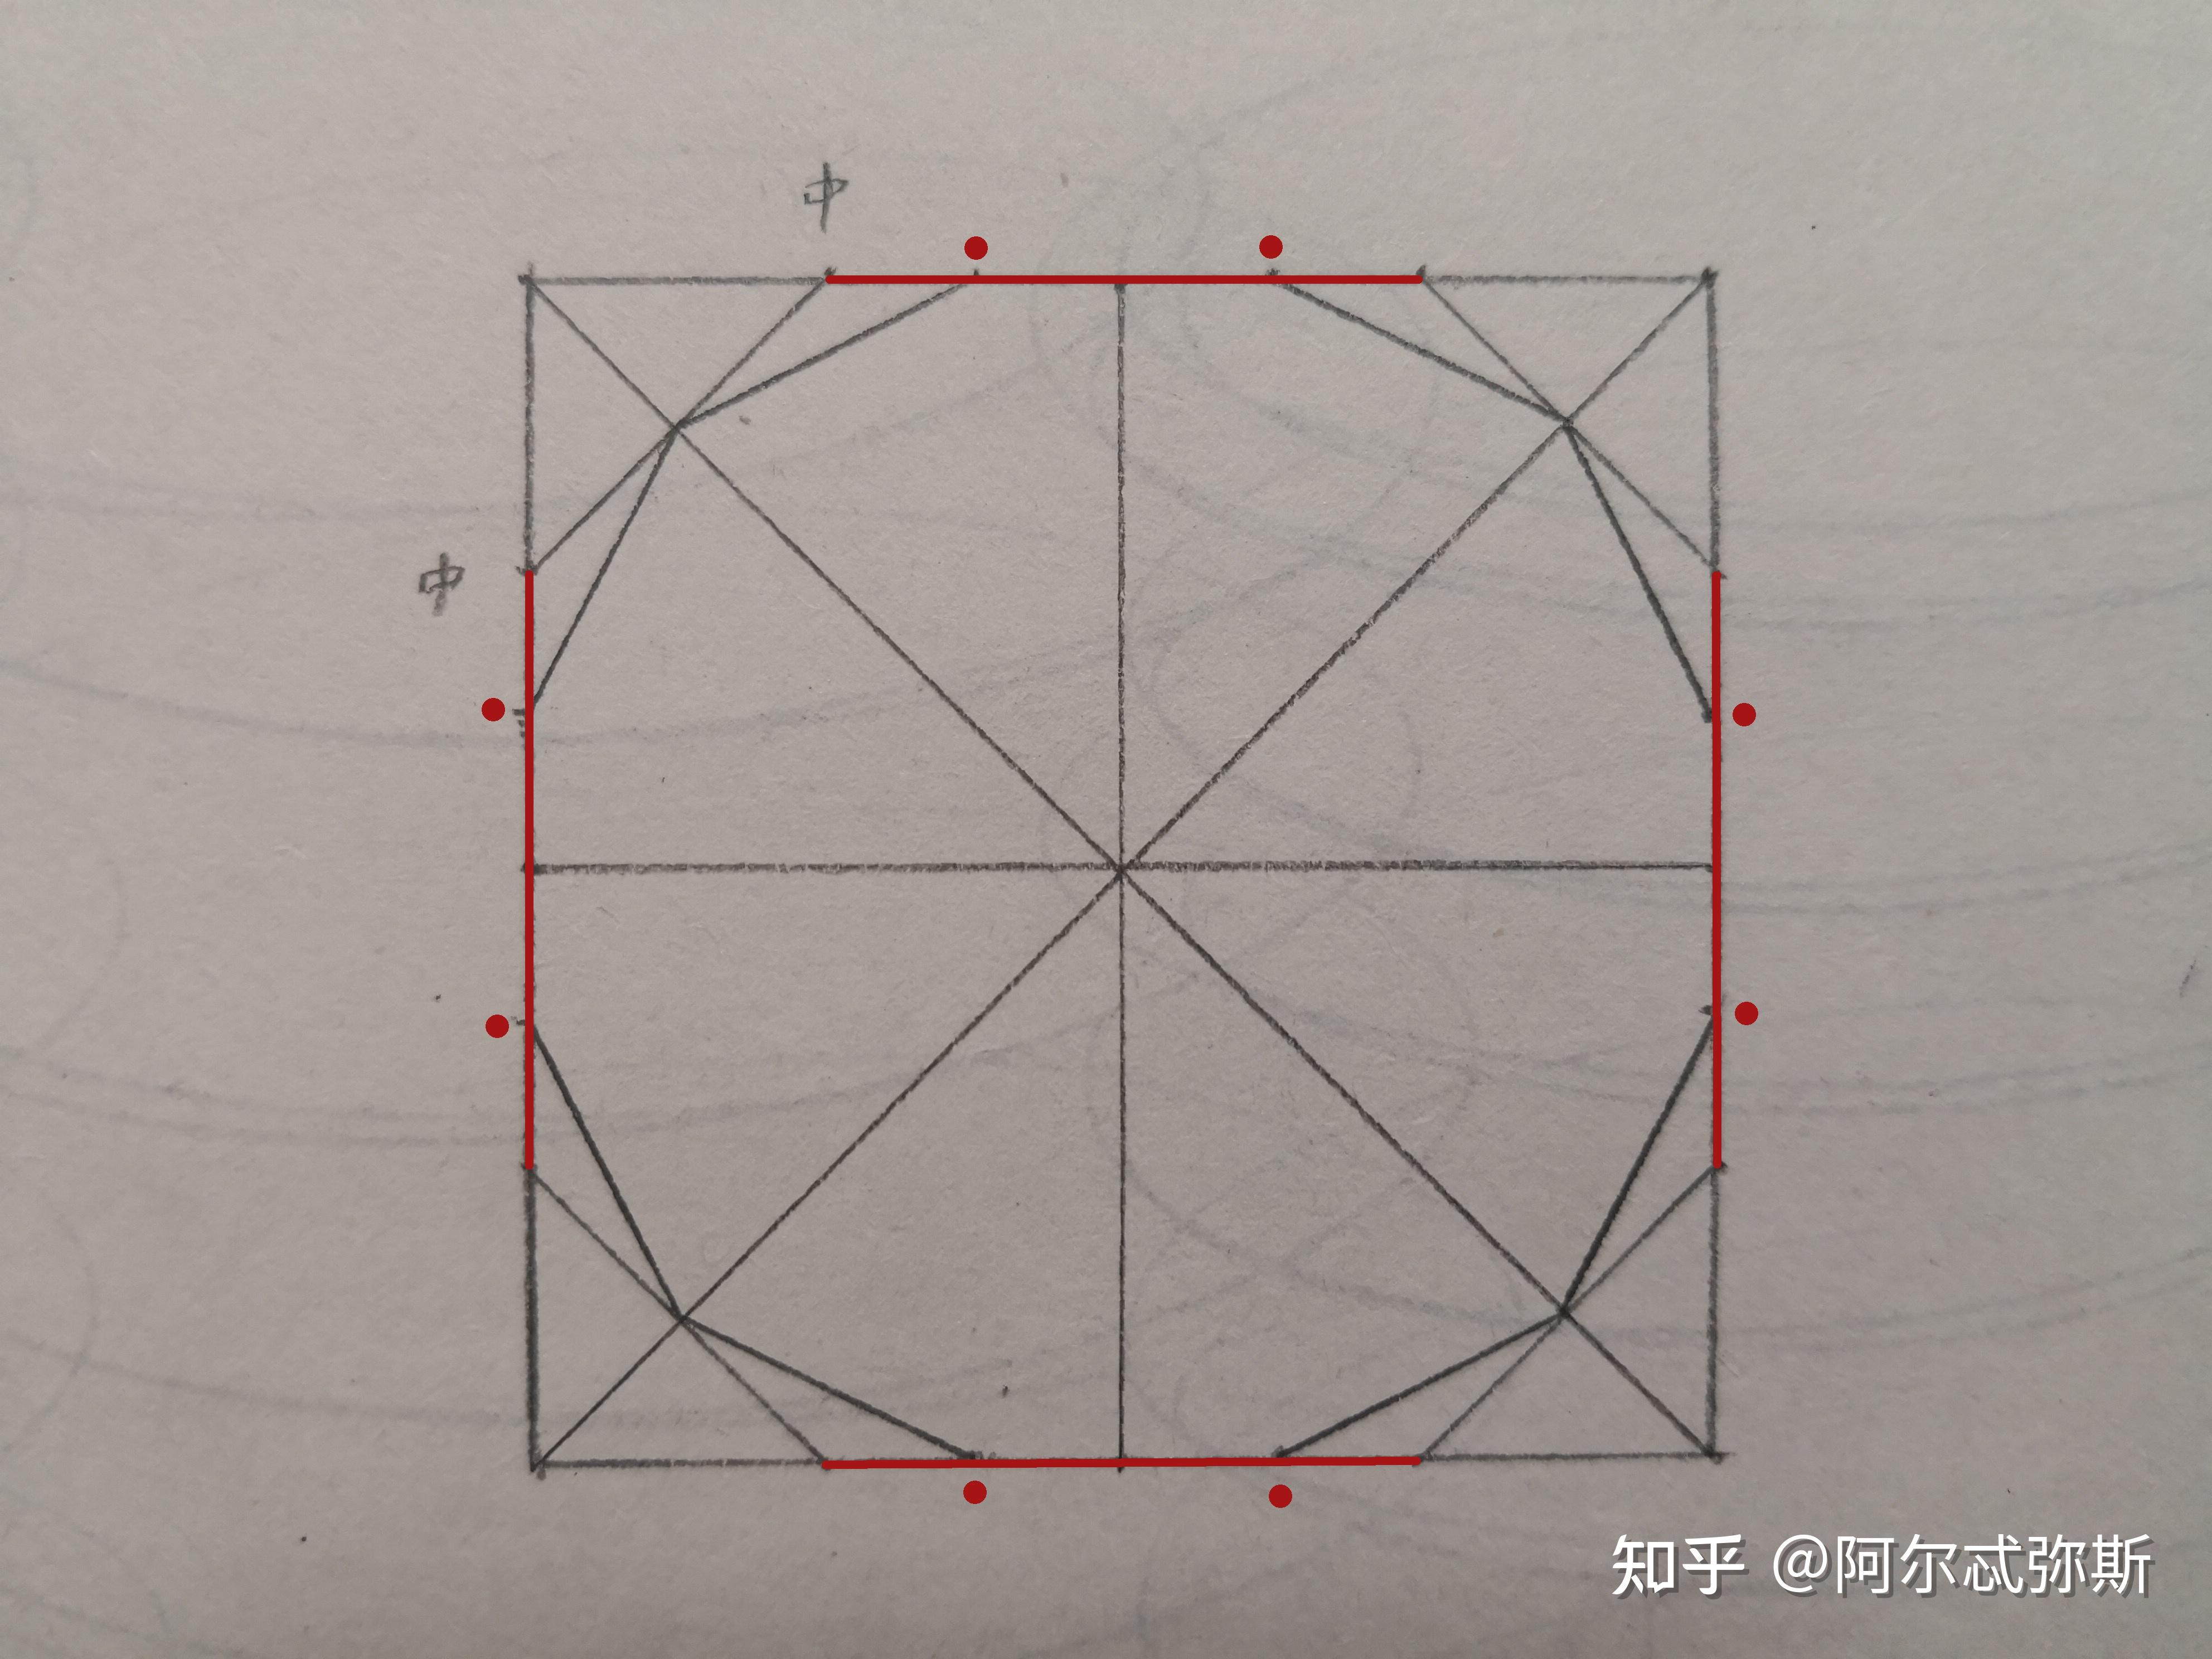 用素描里的切圆法无限切割下去形成的图形是椭圆吗